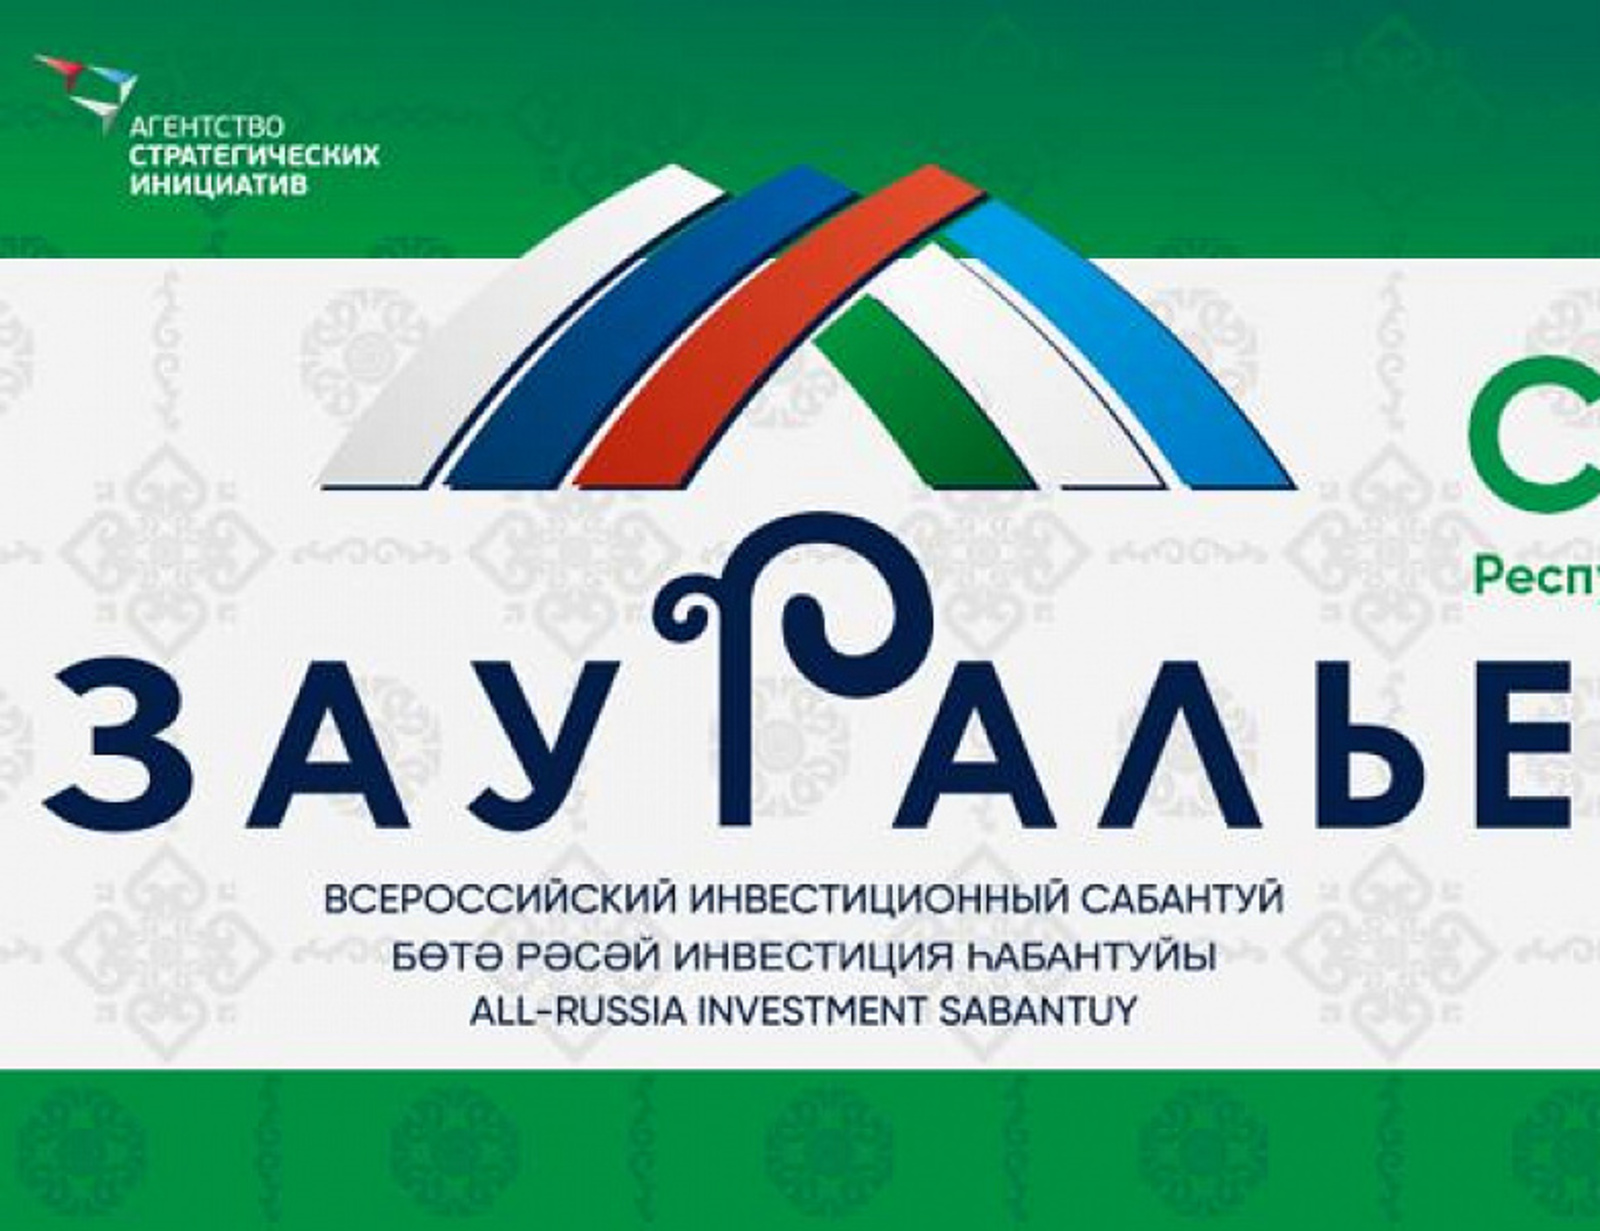 IV Всероссийский инвестиционный сабантуй «Зауралье» традиционно пройдет в Сибае